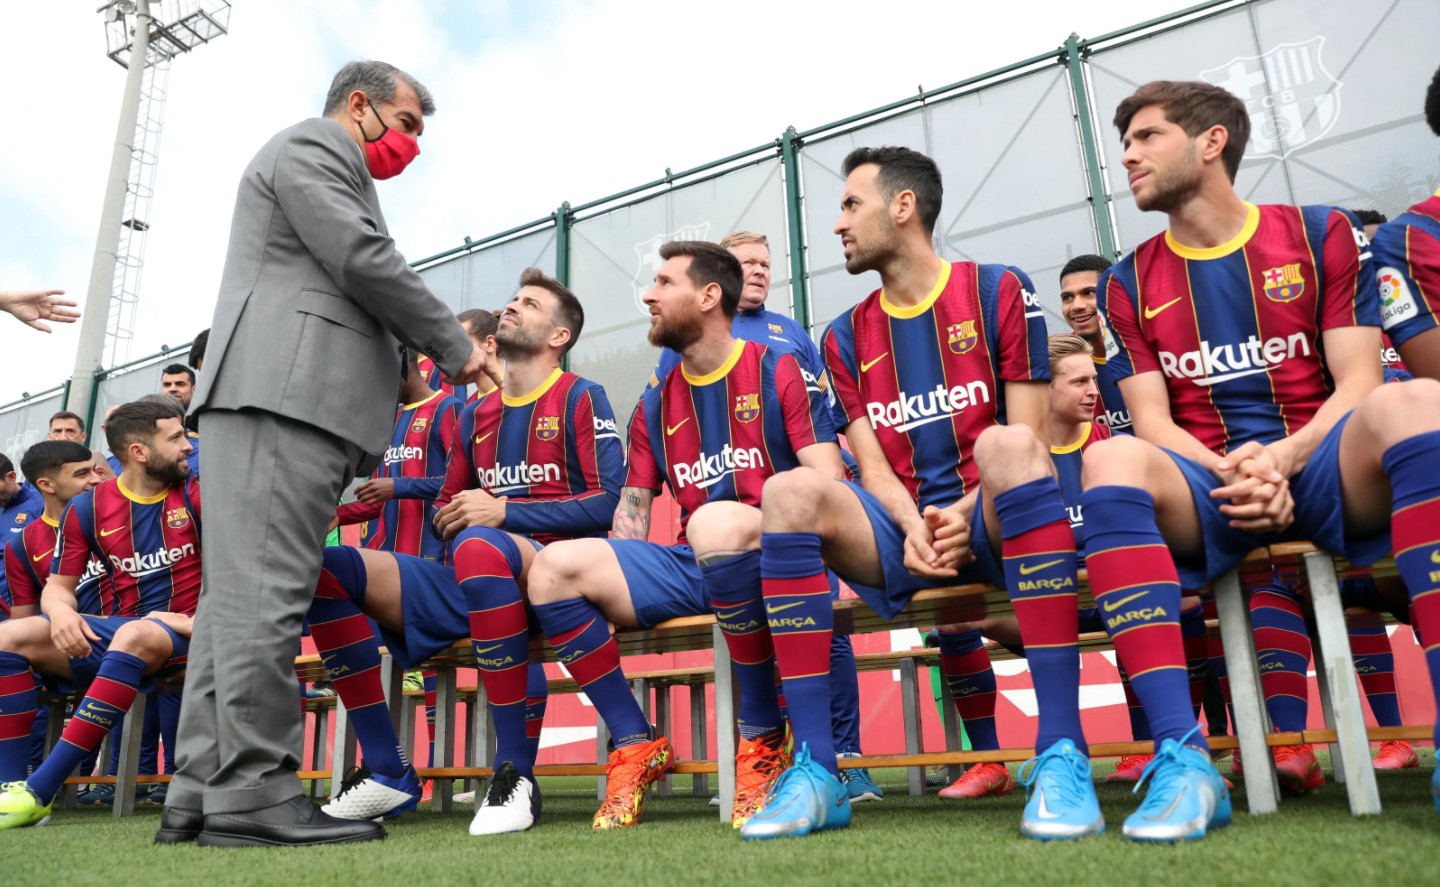 Joan Laporta saluda a la plantilla del Barça, Messi incluido, en la foto oficial del año pasado / FCB